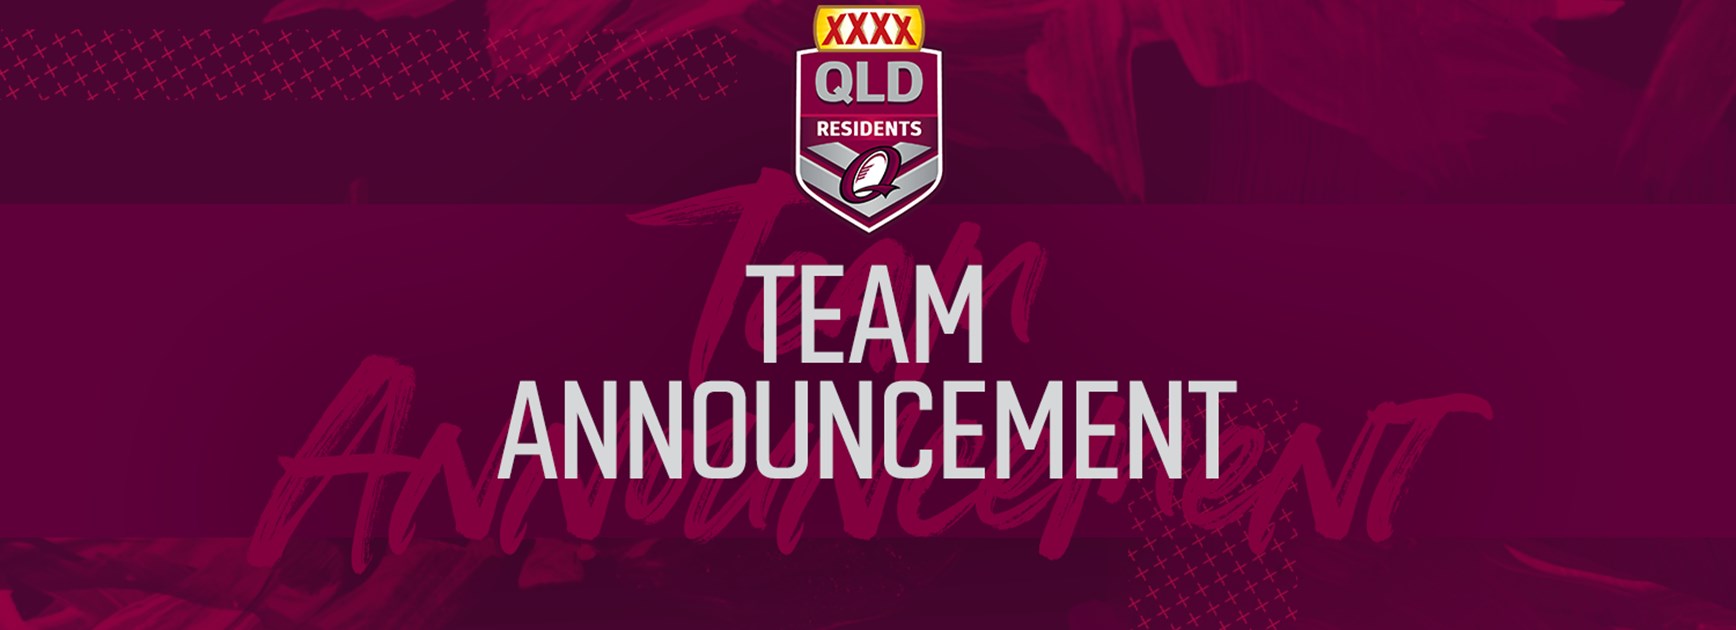 XXXX Queensland Residents team for 2019 clash